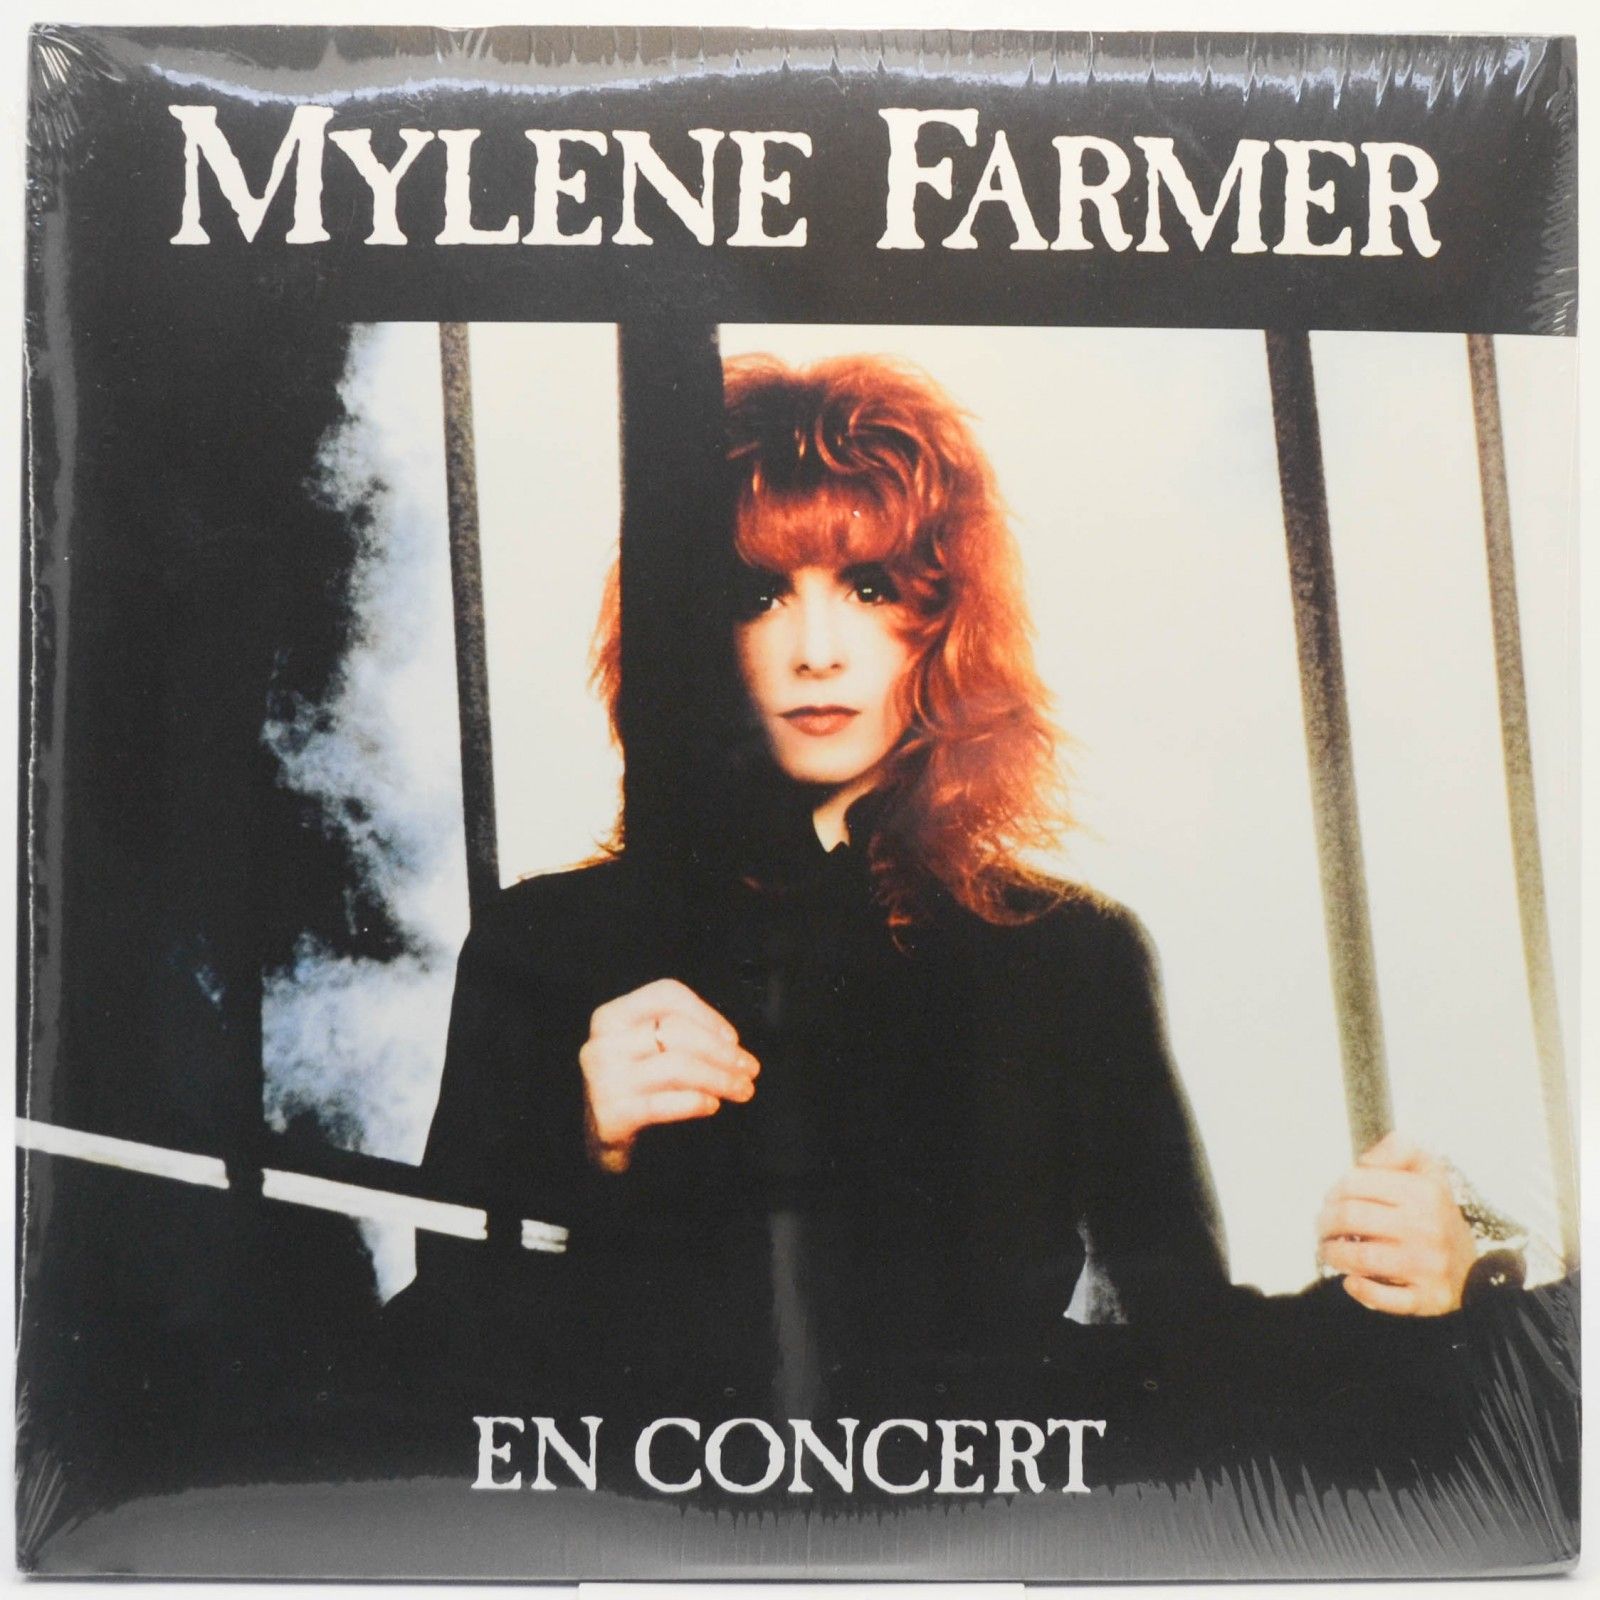 Mylene Farmer — En Concert (2LP), 1989